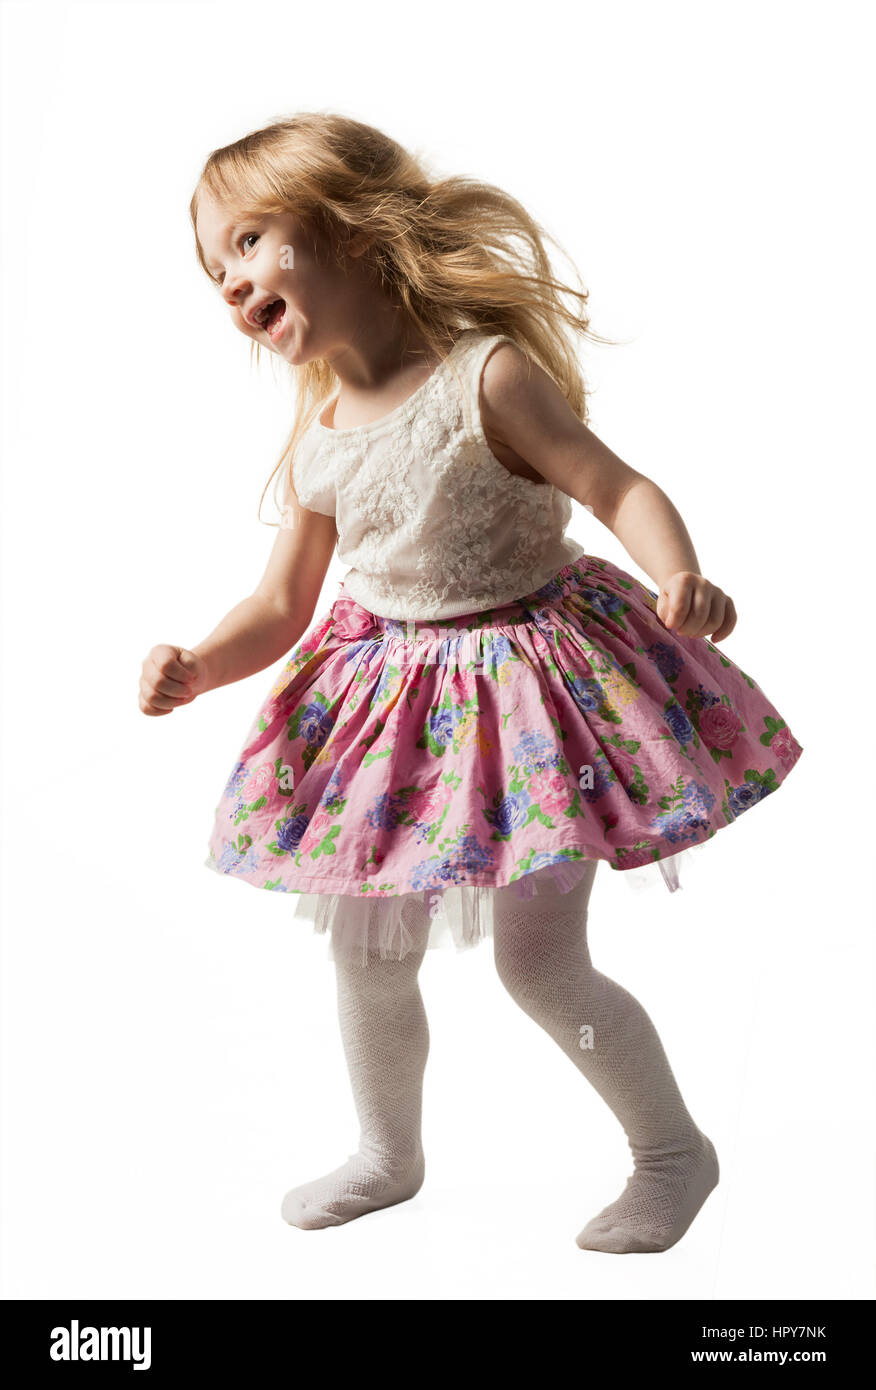 Poco carino ragazza jumping, acceso, dancing, divertendosi. Isolato su sfondo bianco Foto Stock